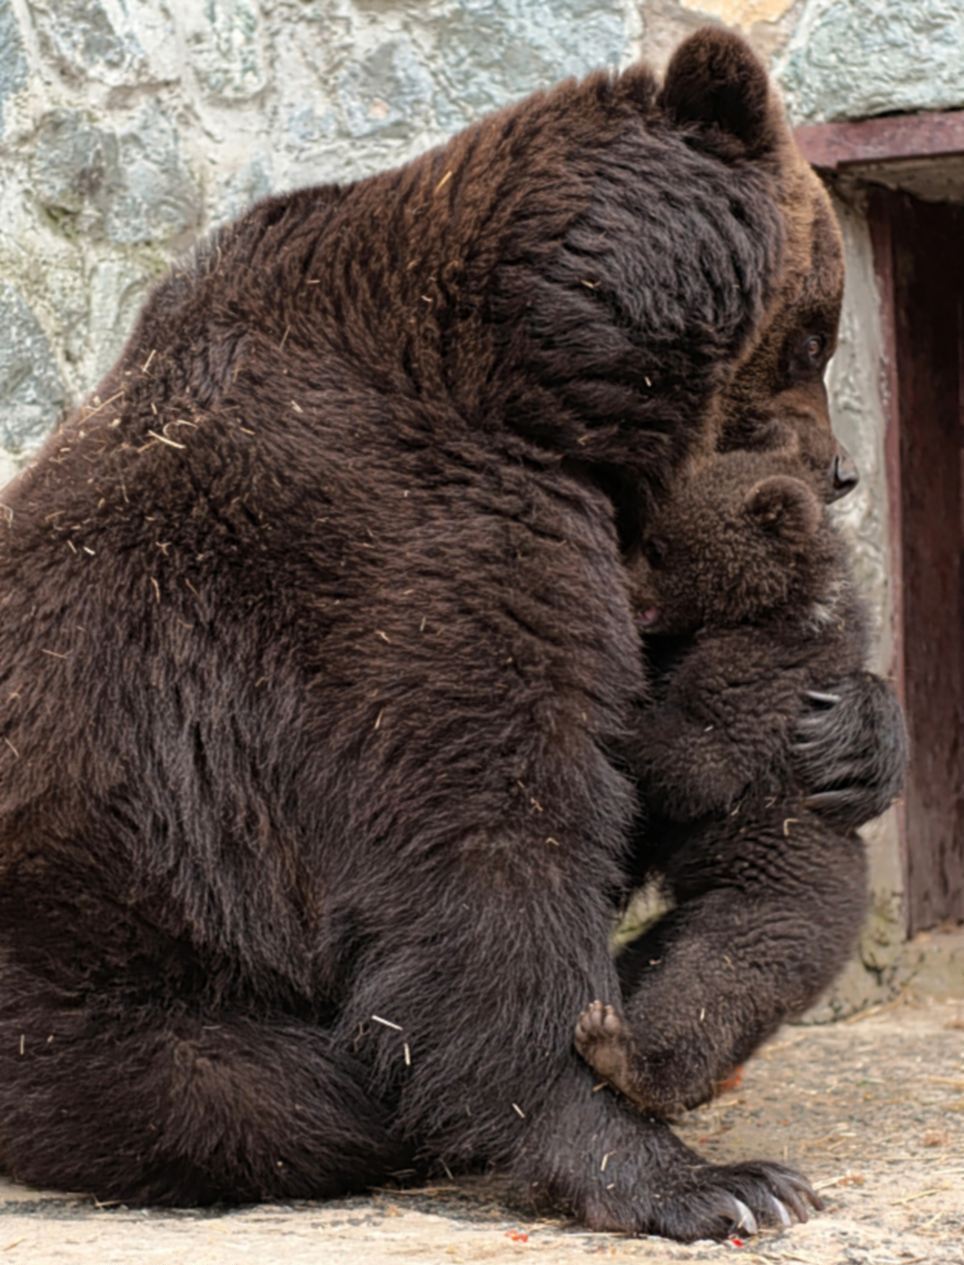 先惩罚后抚慰 乌克兰母棕熊教育熊仔酷似人类